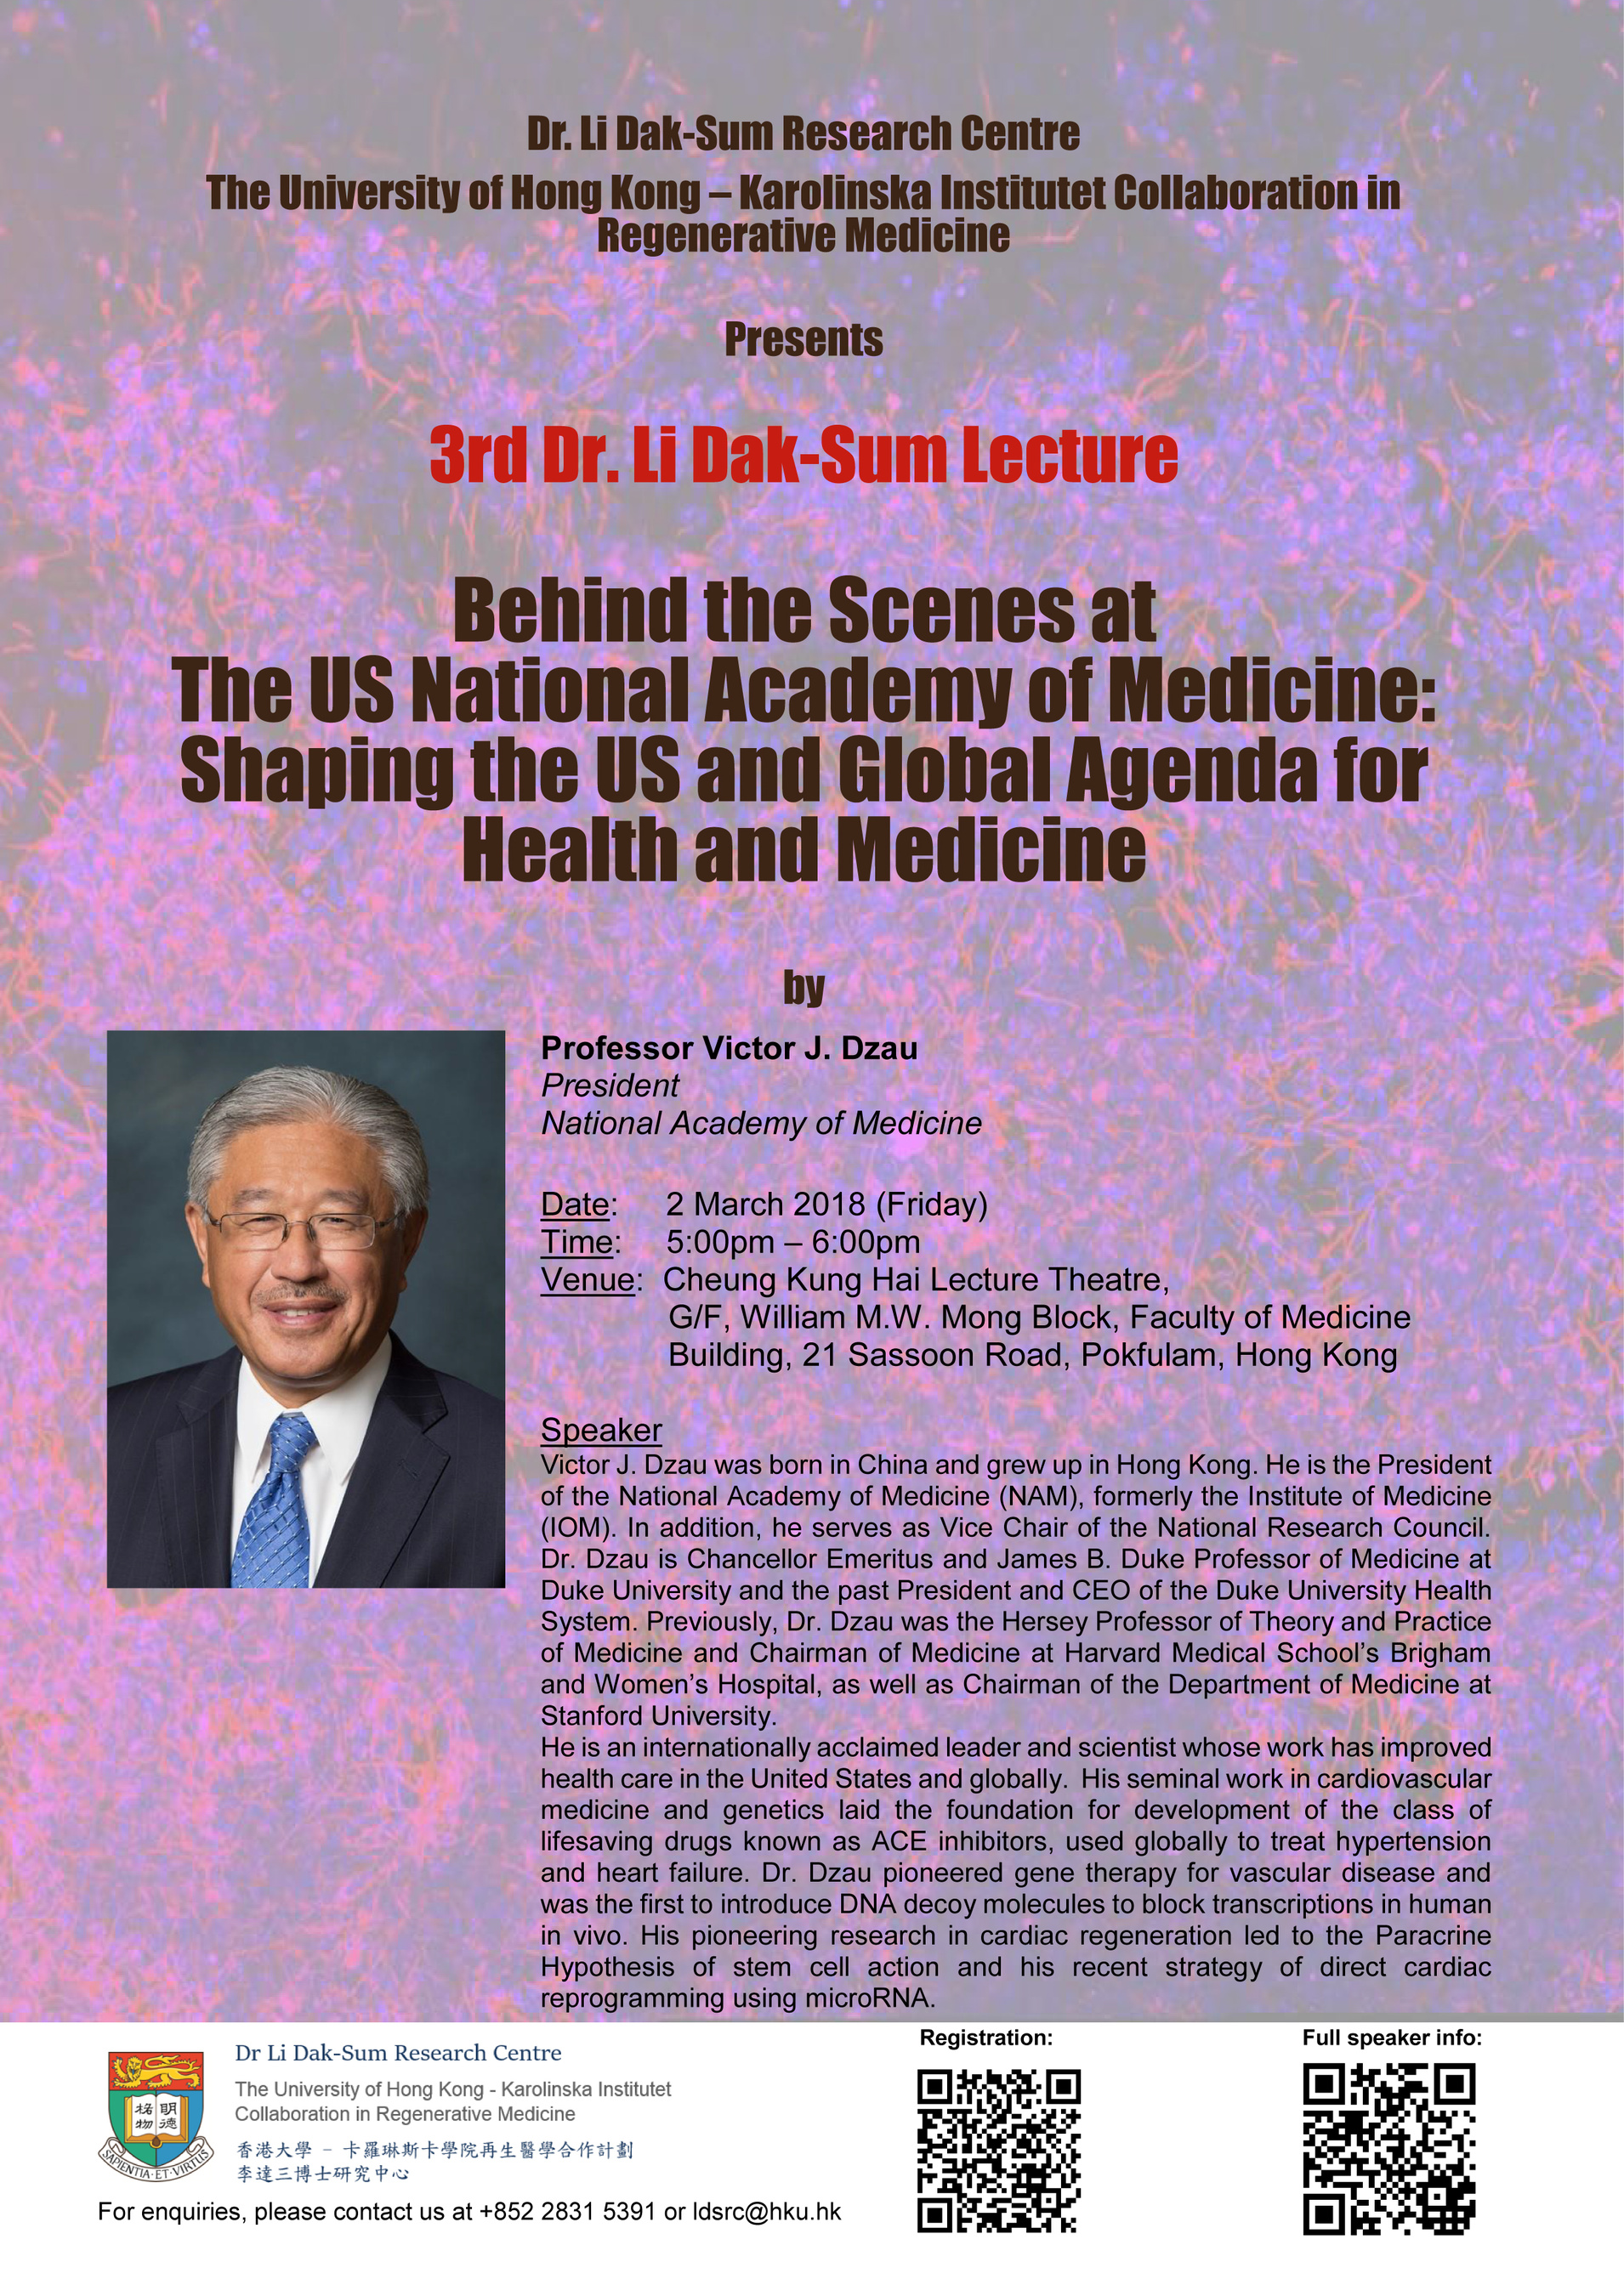 3rd Dr Li Dak Sum Lecture by Dr Victor Dzau